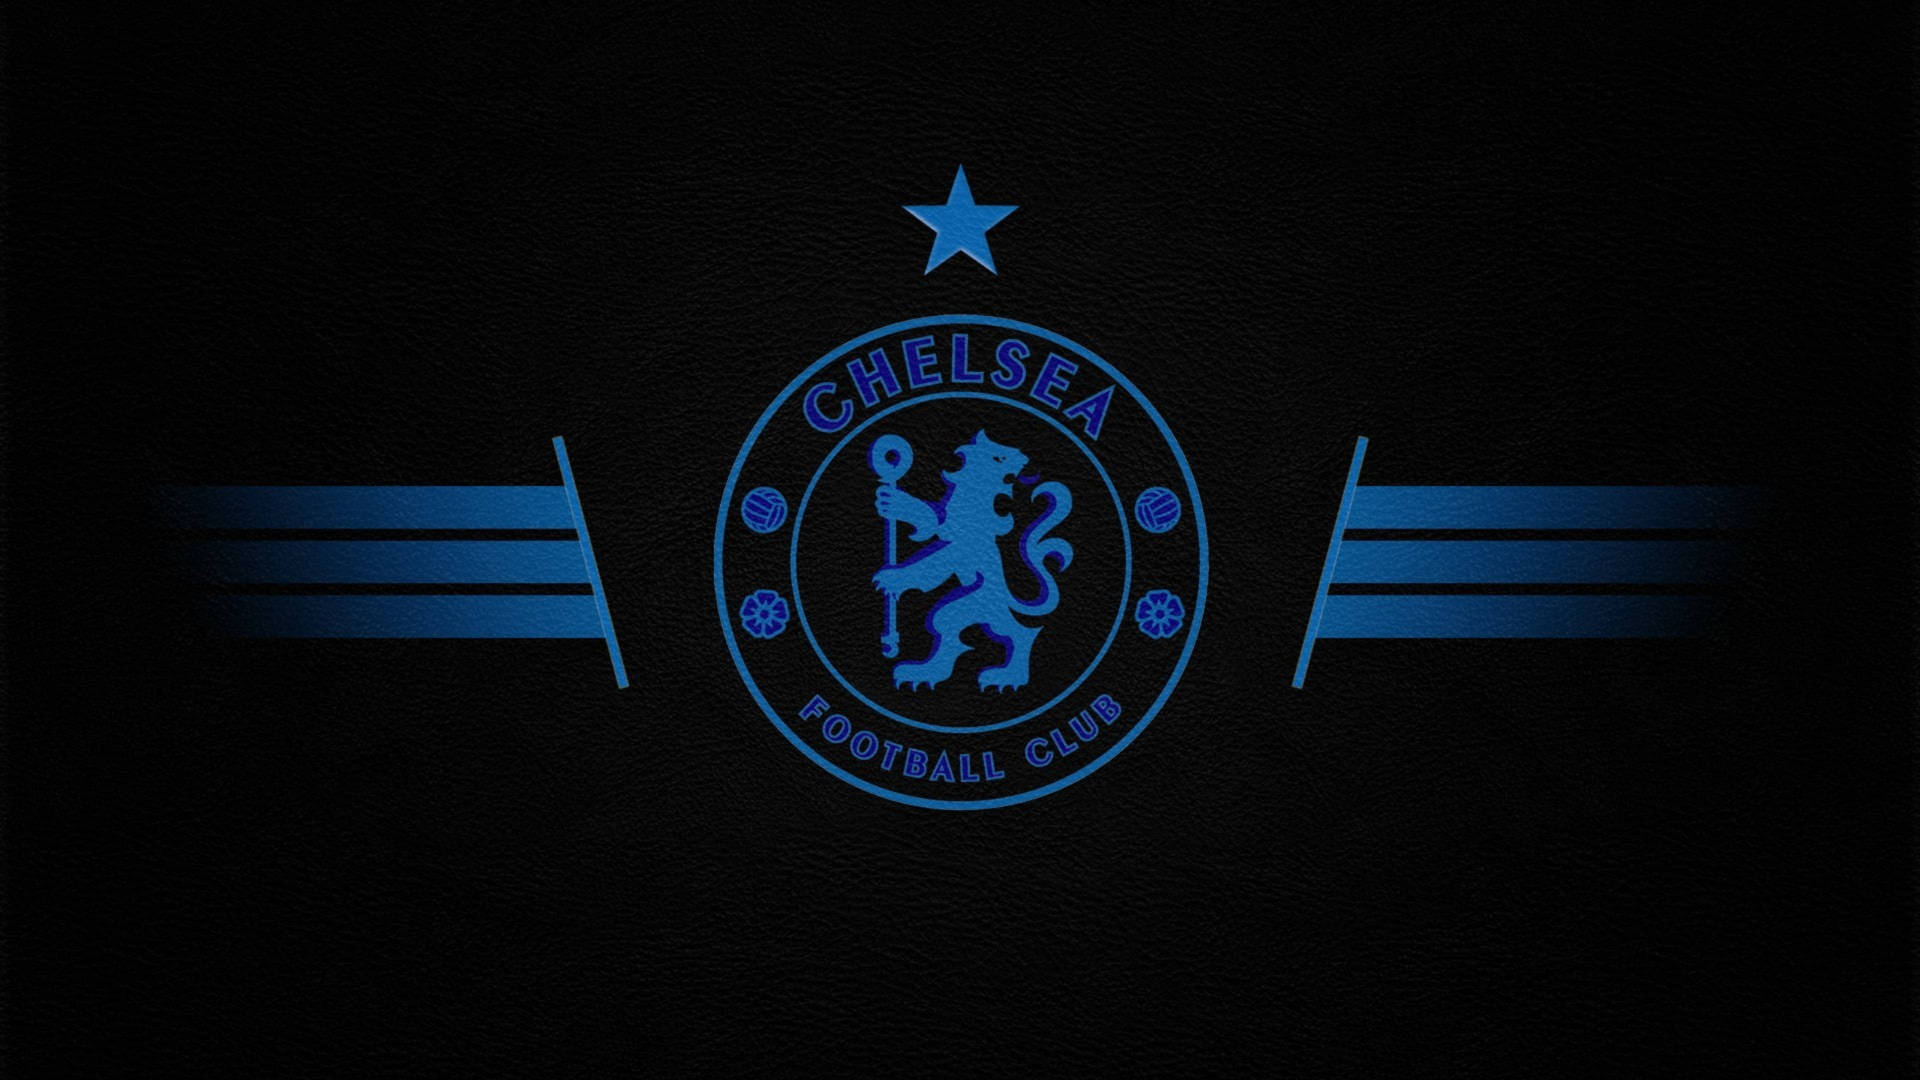 Premier League Chelsea F.c. Emblem Background